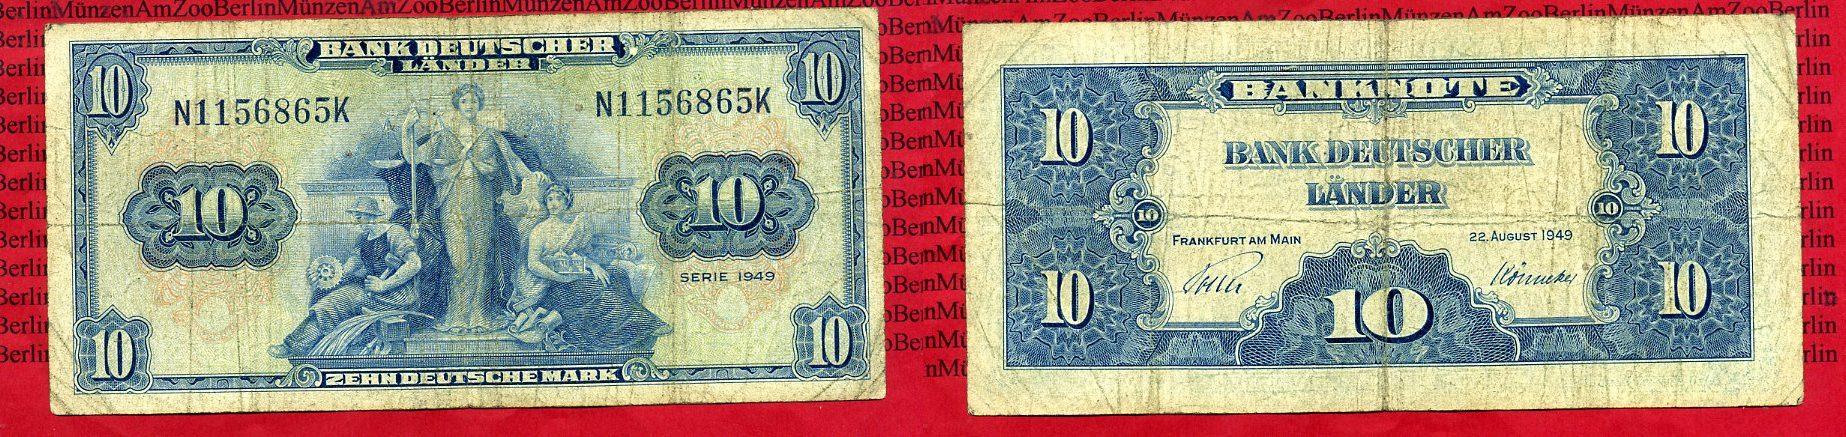 Foto Brd, Bank Deutscher Länder 10 Deutsche Mark Bank Deutscher Länder 1949 foto 85356